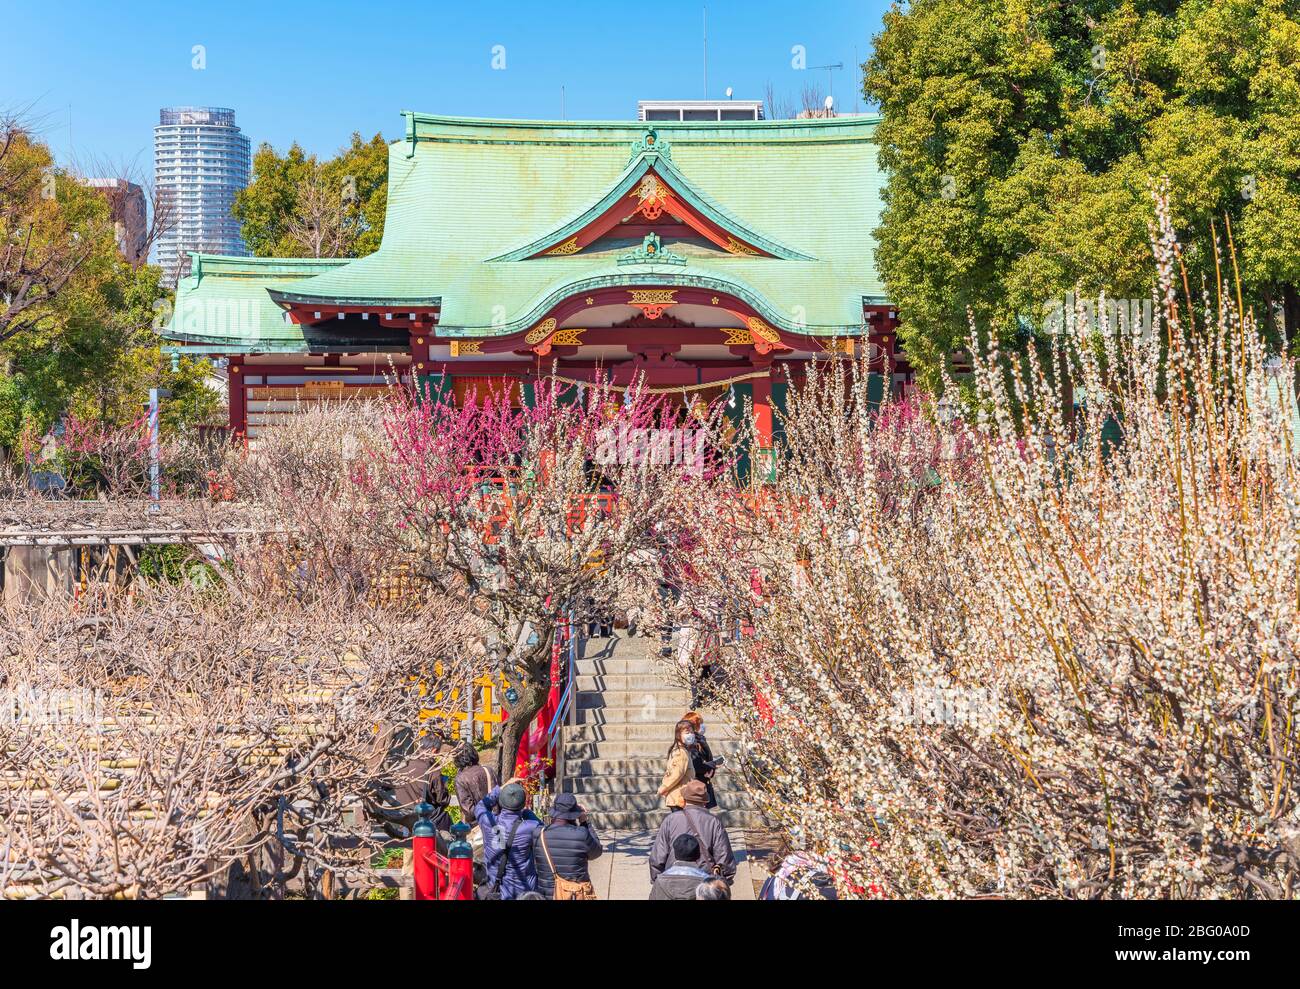 tokyo, japon - 08 mars 2020: Les gens qui profitent de pruniers en fleurs dans le sanctuaire de Kameido Tenjin dédié à Sugawara no Michizane. Banque D'Images